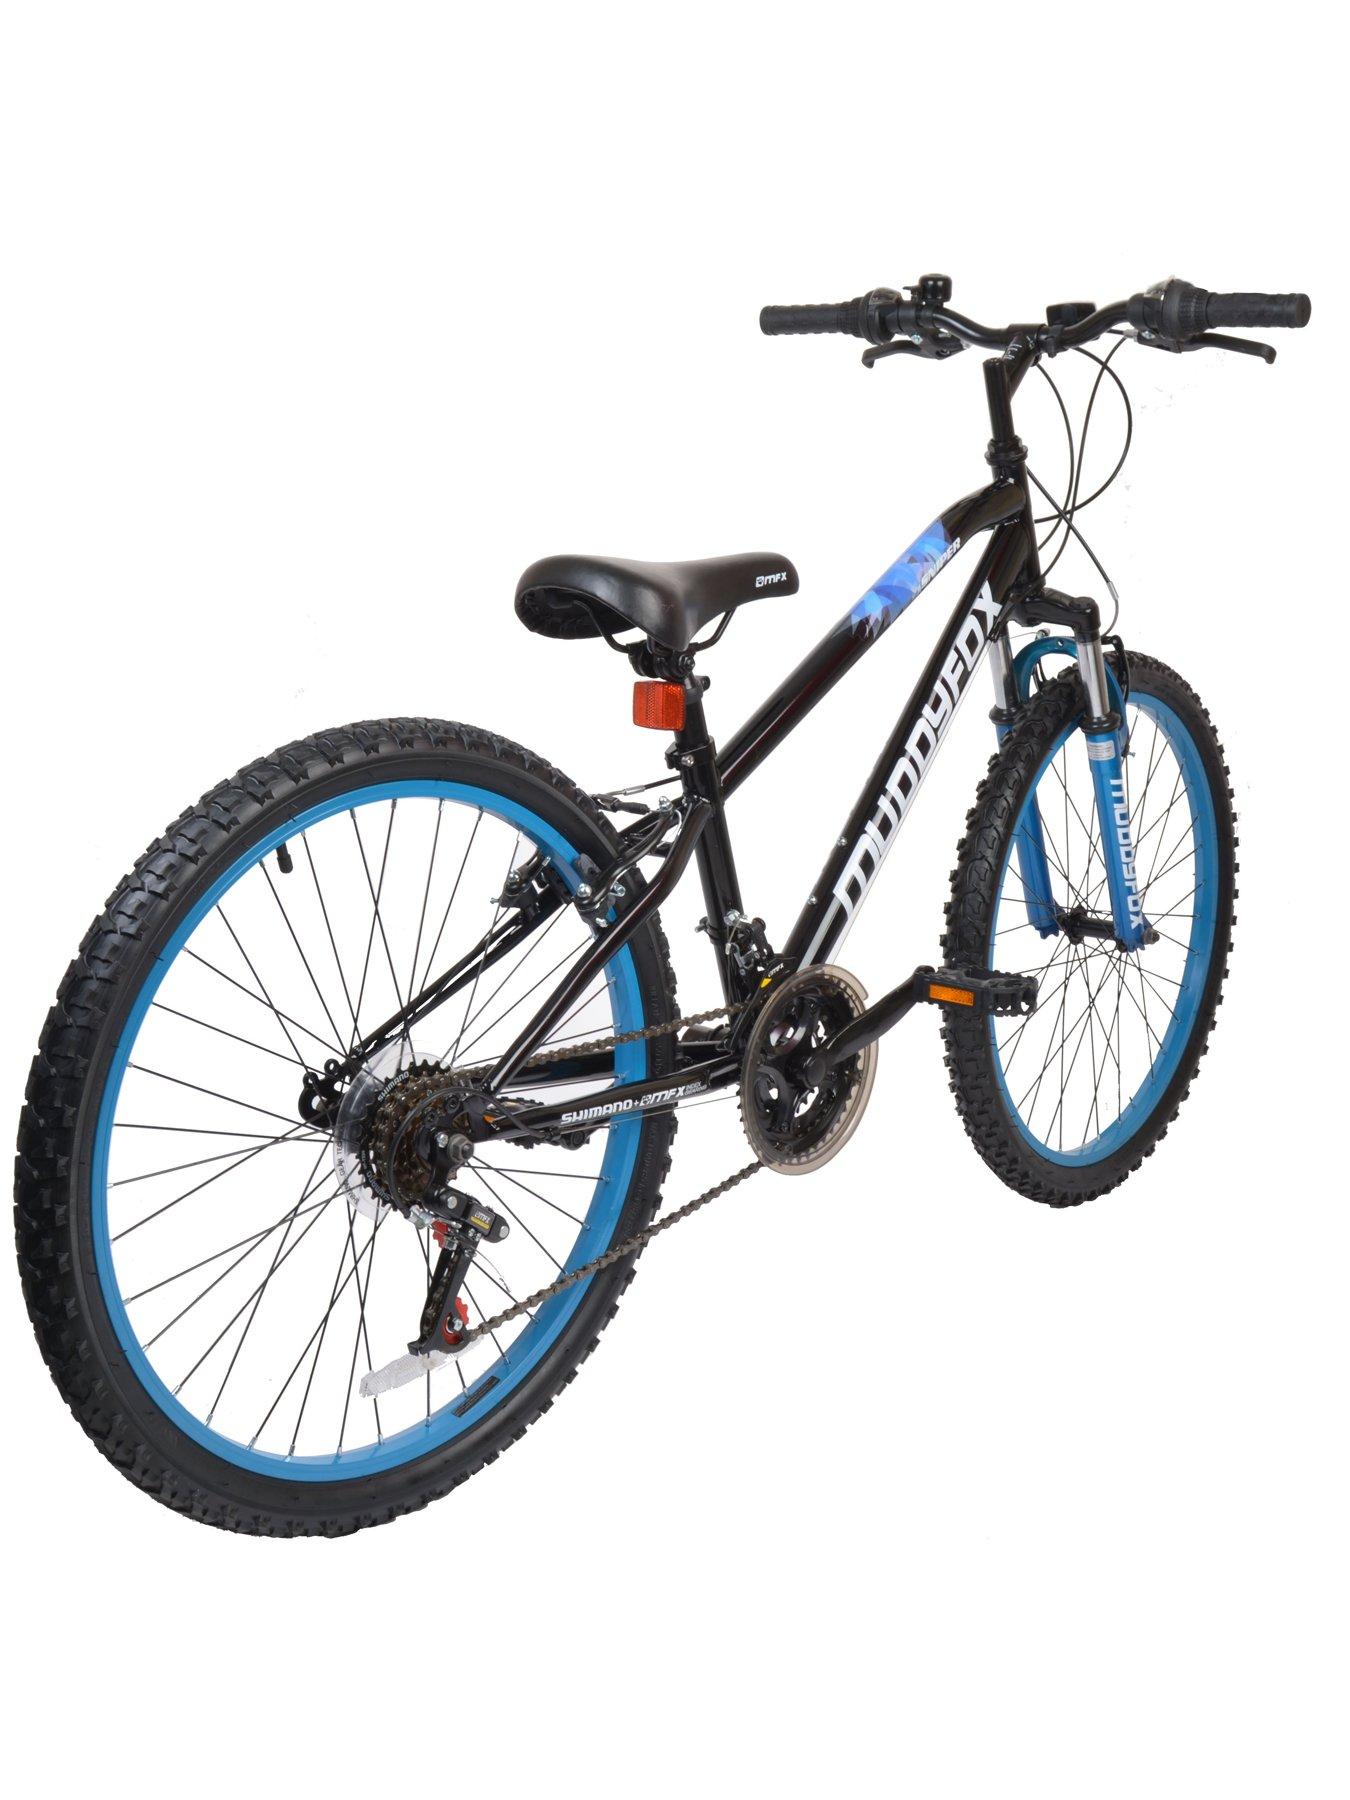 muddyfox 24 inch mountain bike